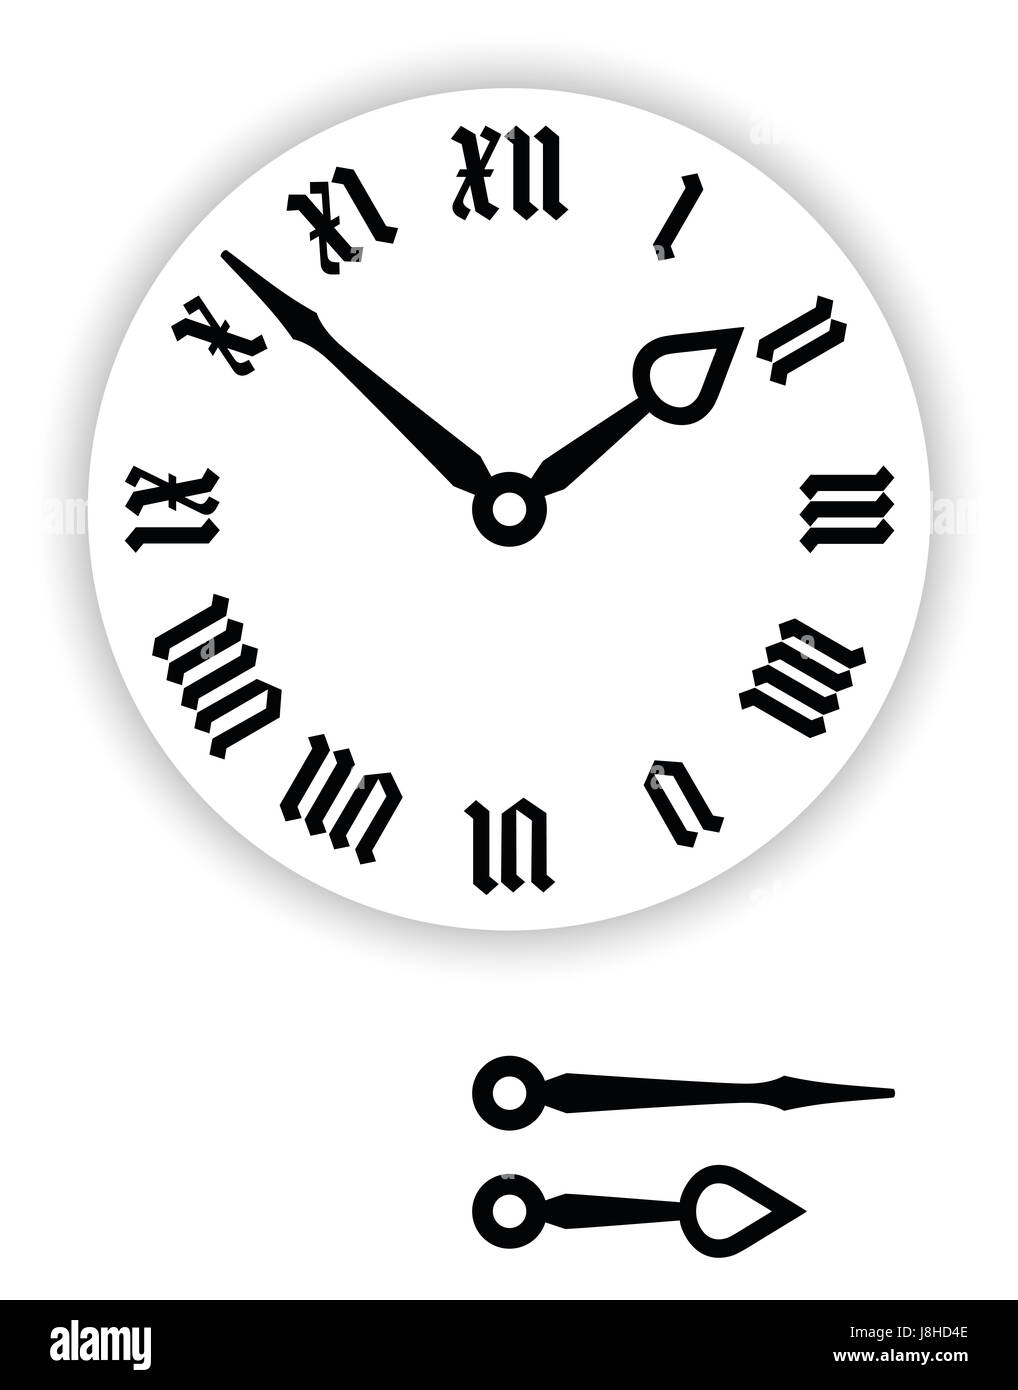 Números romanos Fraktur cara del reloj. Parte de reloj analógico con punteros de color negro. Dial con números, también gótico blackletter minúsculo o Textura. Foto de stock